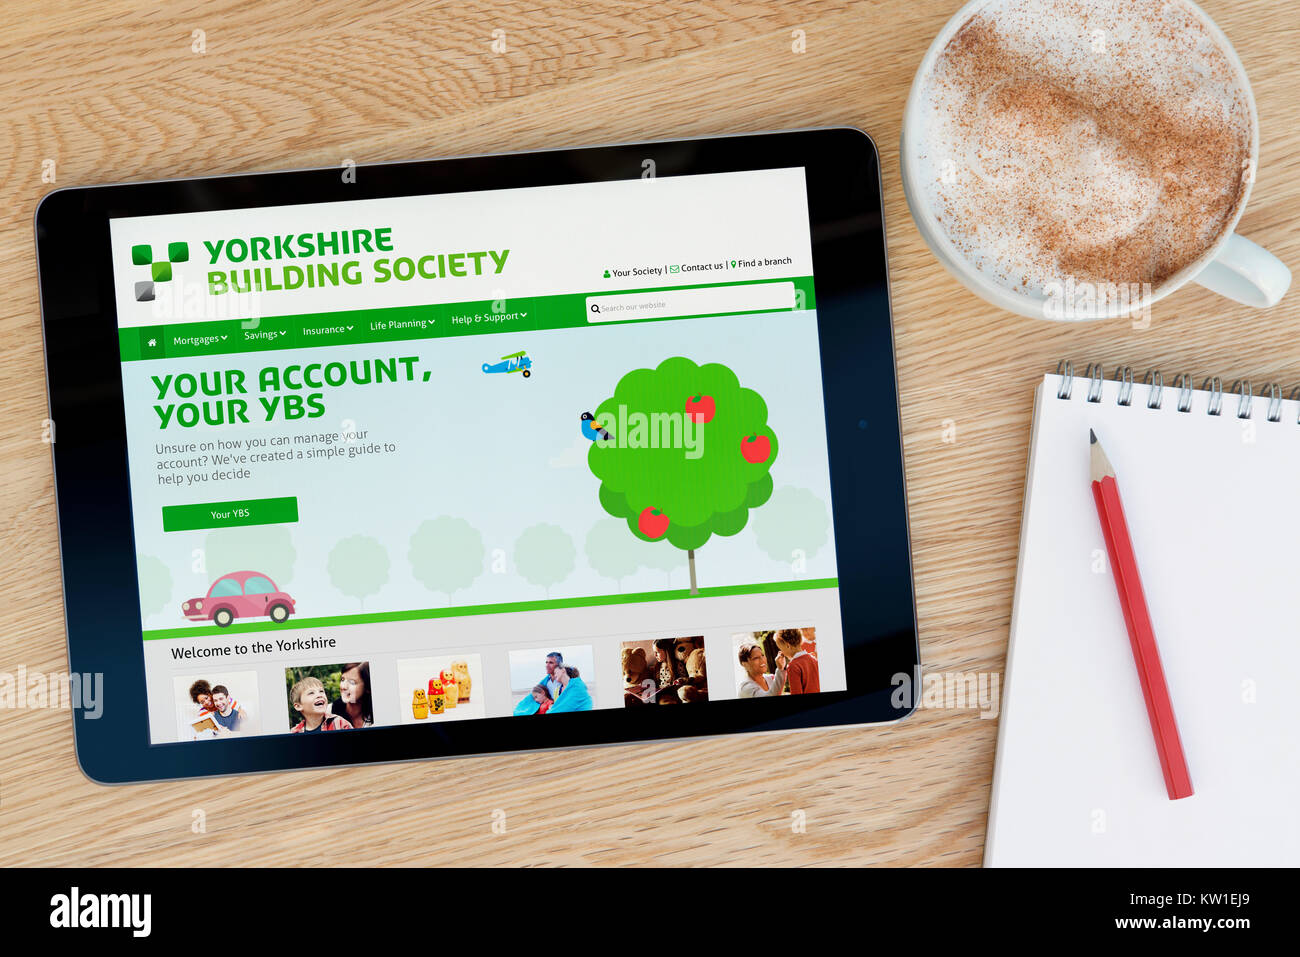 Die Yorkshire Building Society Website auf einem iPad tablet device, ruht auf einem hölzernen Tisch neben einem Notizblock, Bleistift und Tasse Kaffee (nur redaktionell) Stockfoto